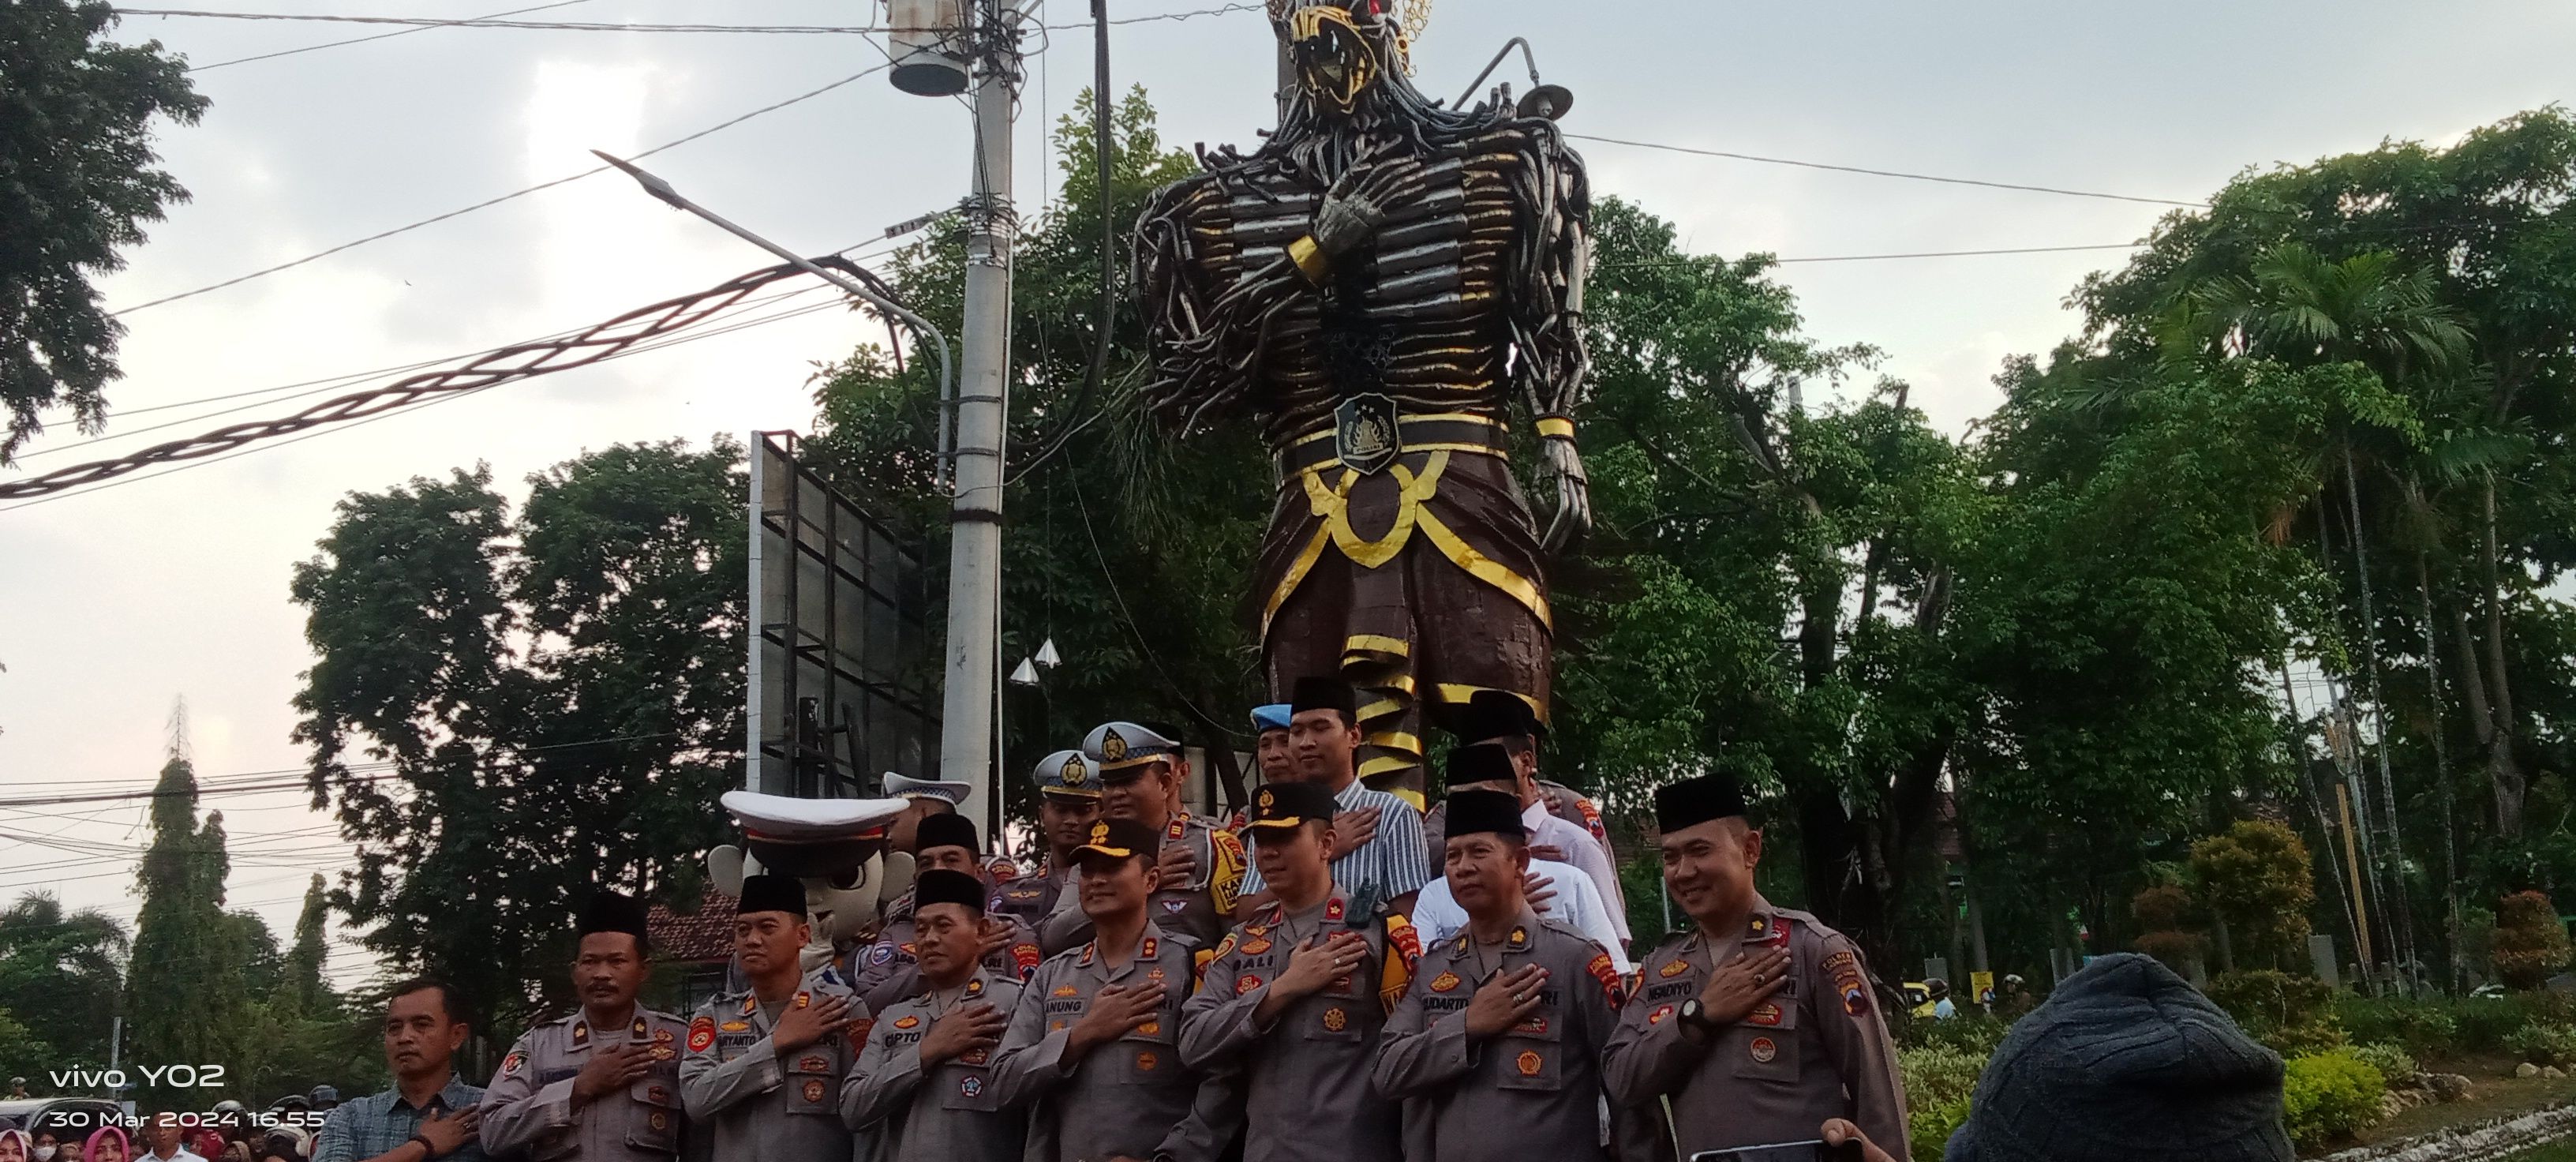 Kapolres Grobogan AKBP Dedy Anung Kurniawan bersama PJU Polres Grobogan berfoto di depan Patung Garbha. 